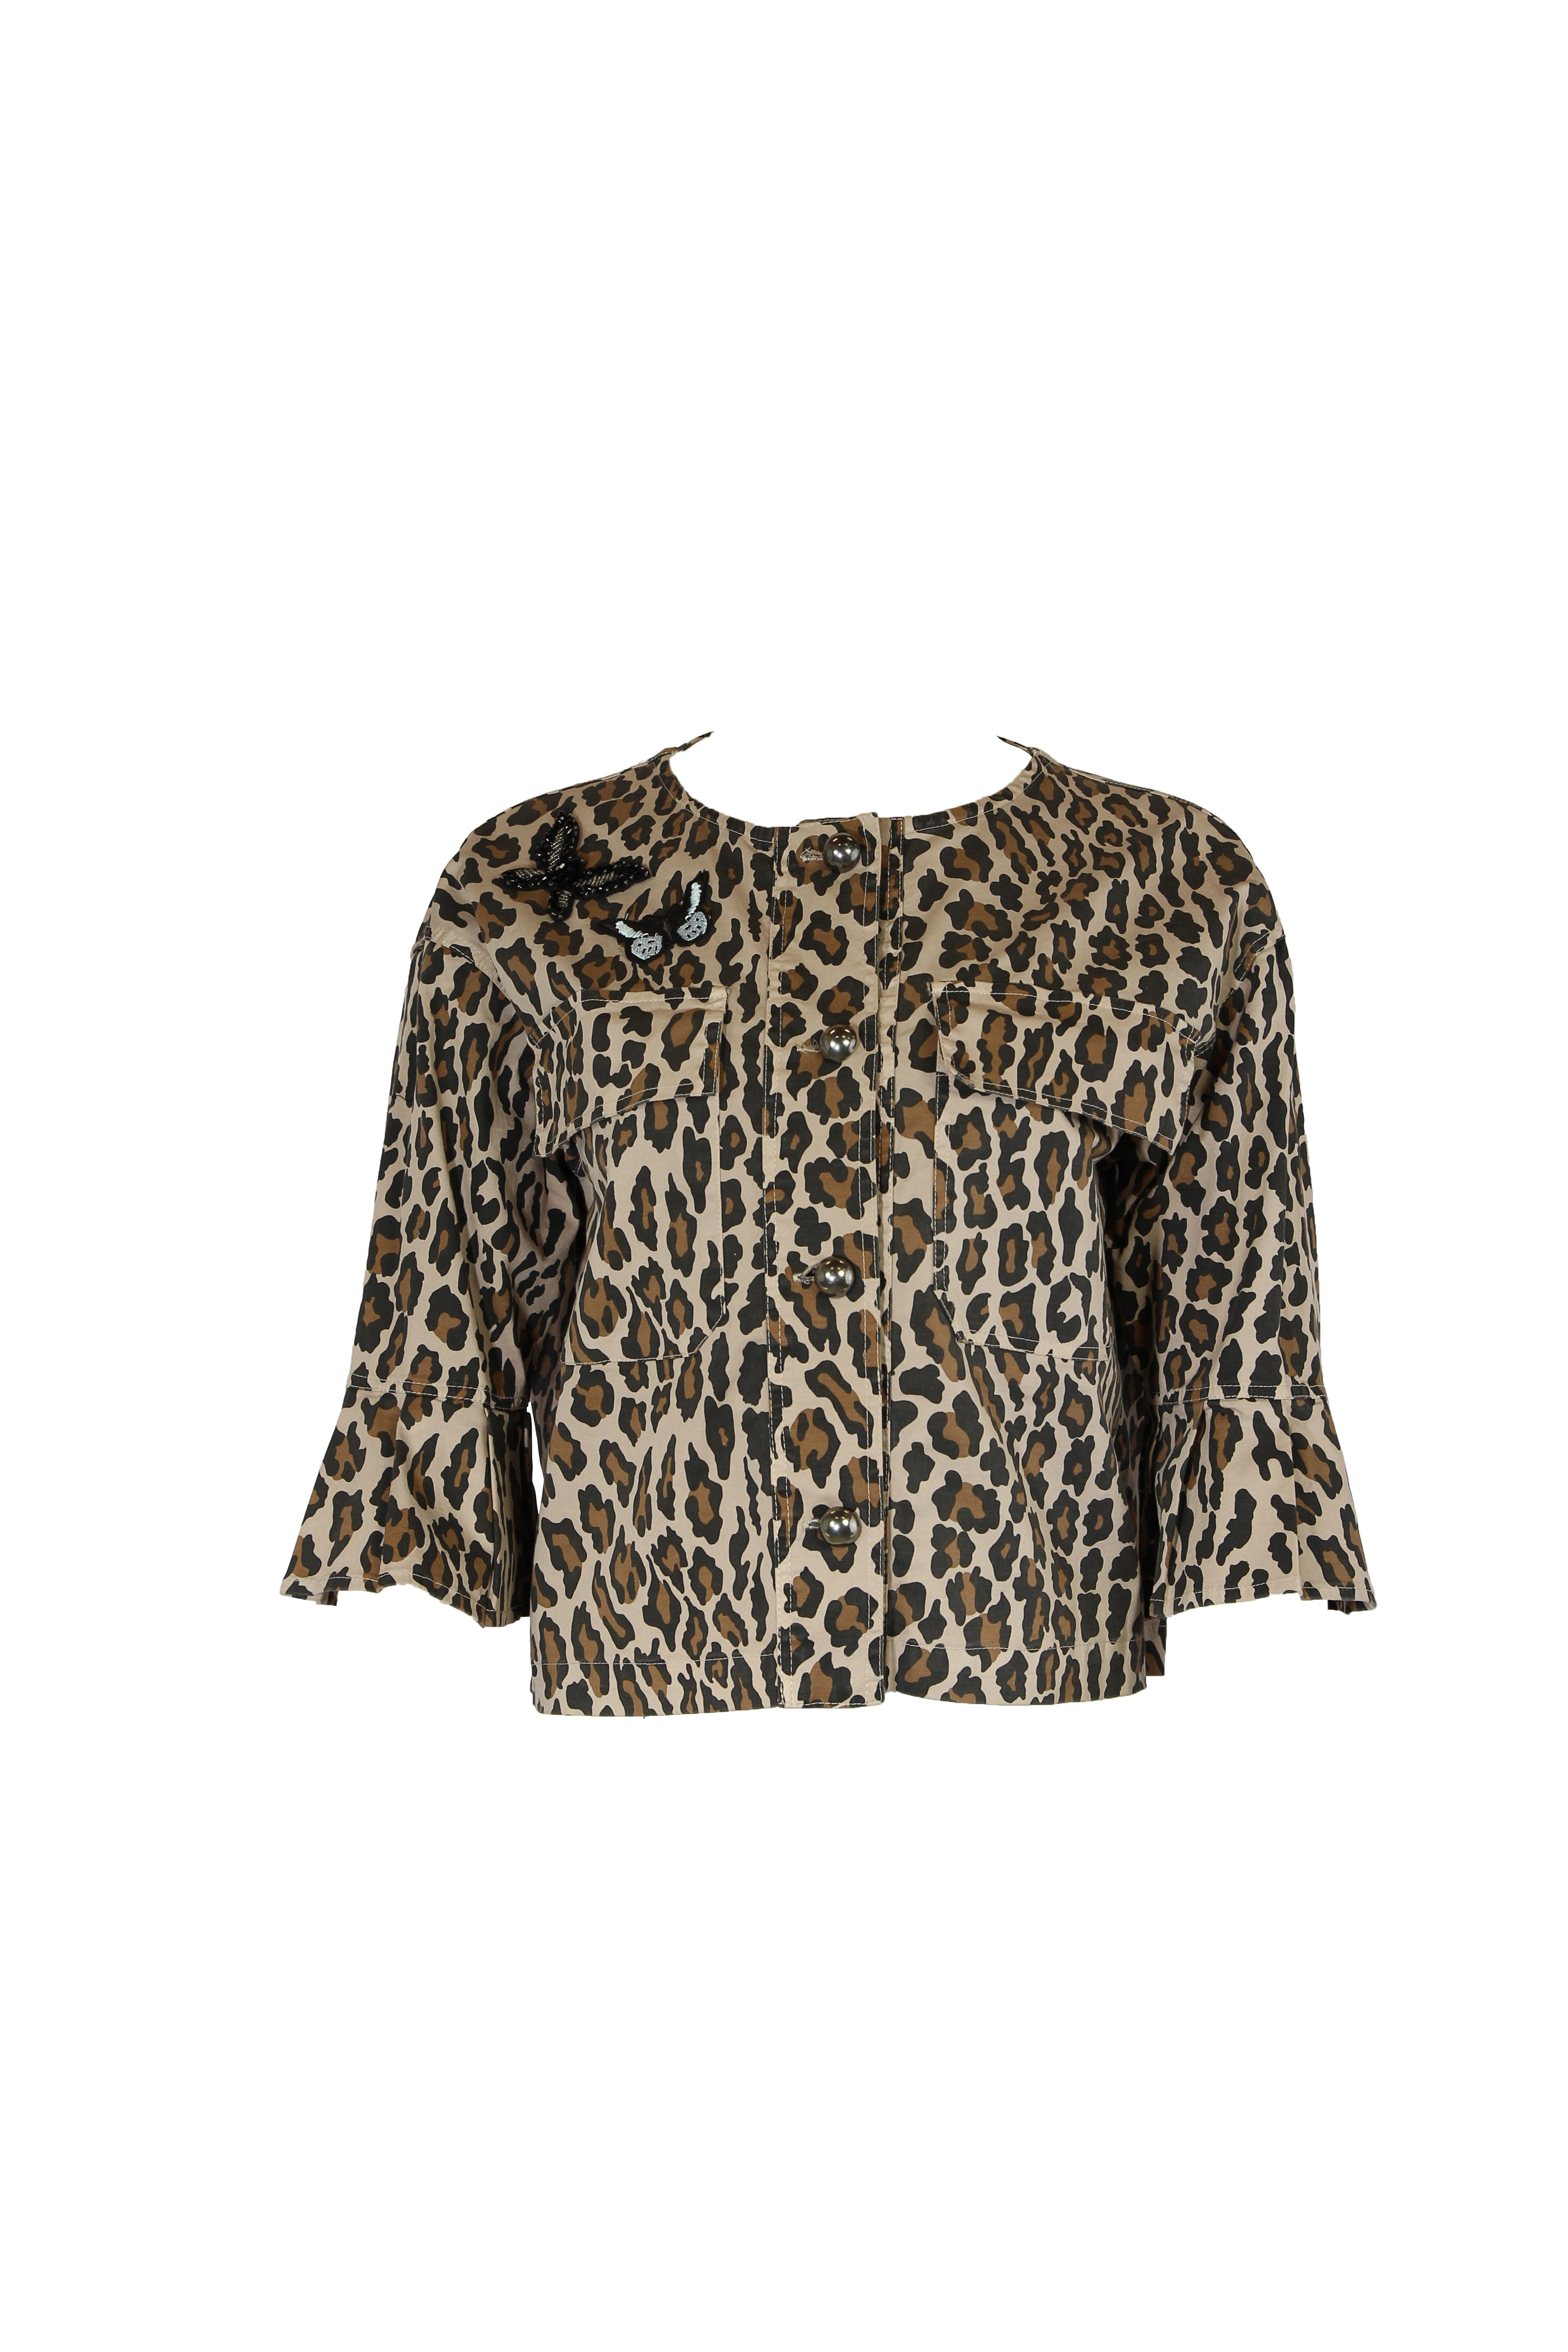 casaco-leopardo-1